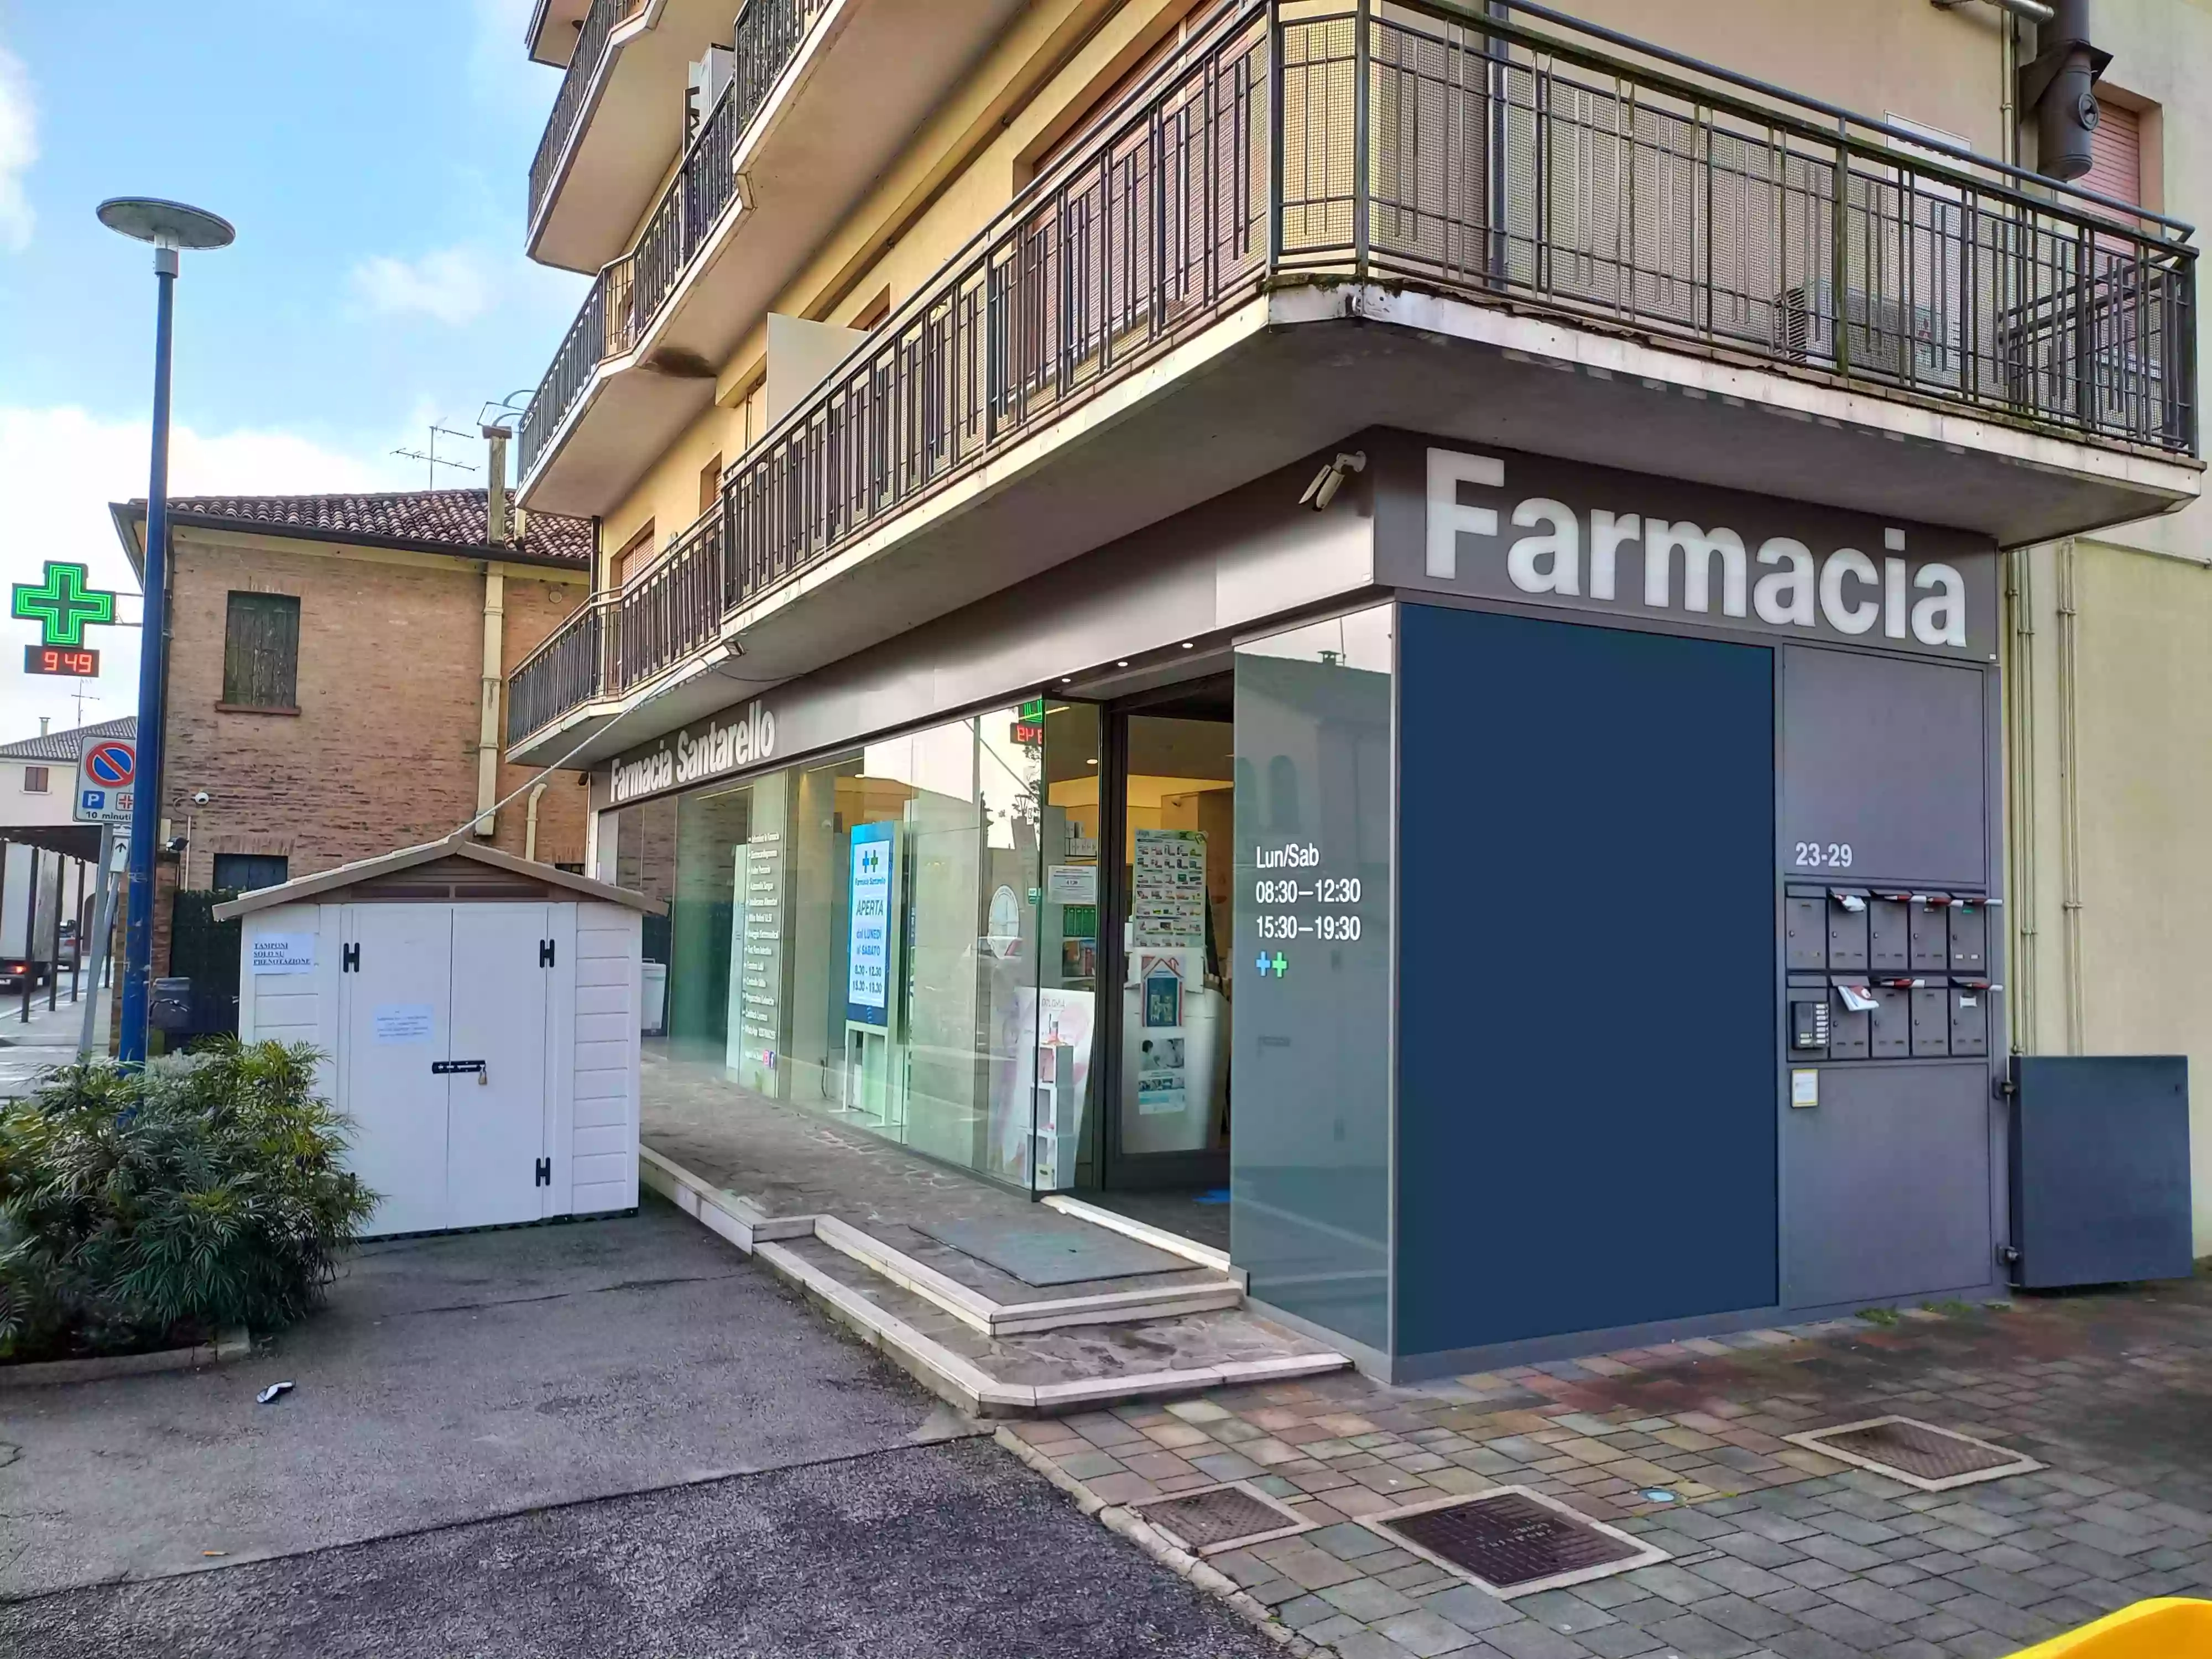 Farmacia Santarello